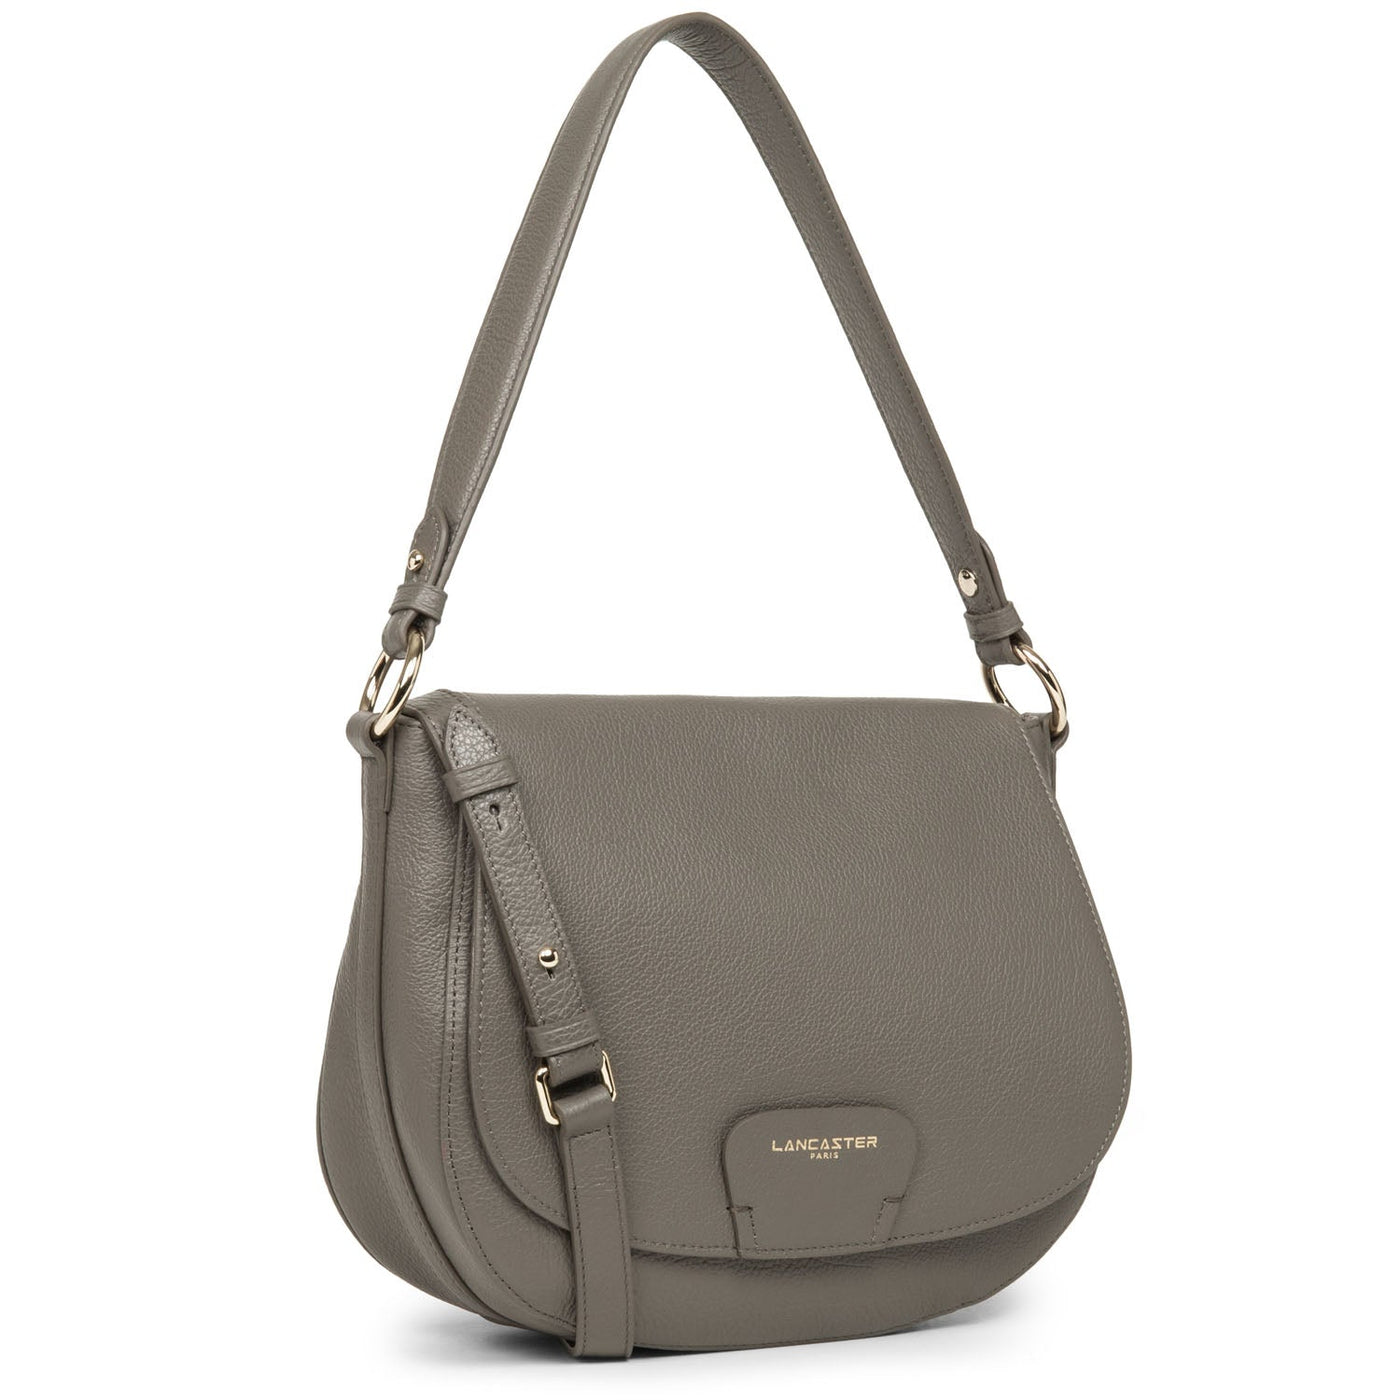 shoulder bag - dune #couleur_gris